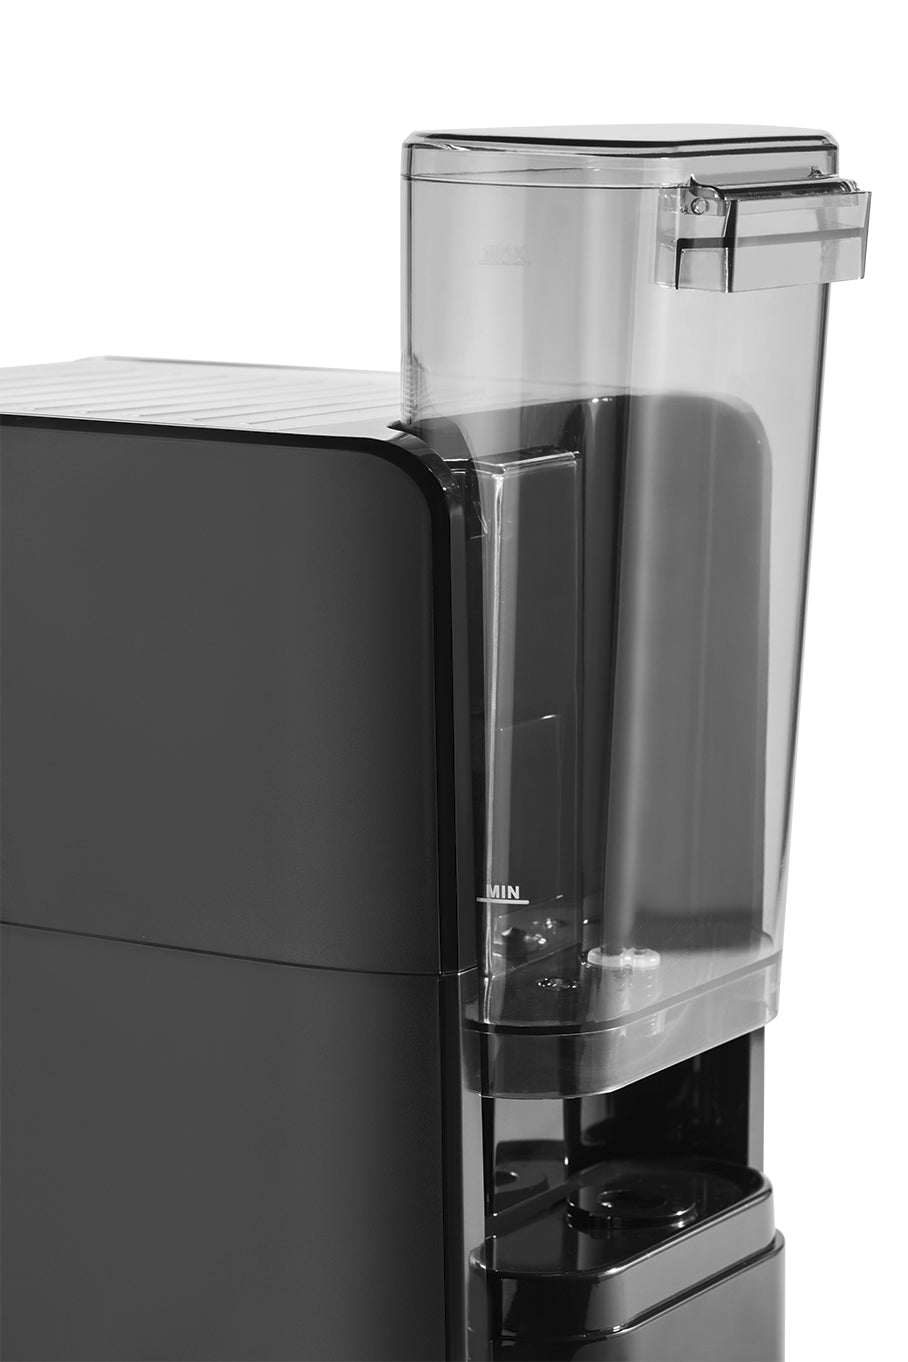 Beko Espresso Coffee Machine - CEP5152B | Kitchen Appliance | Halabh.com